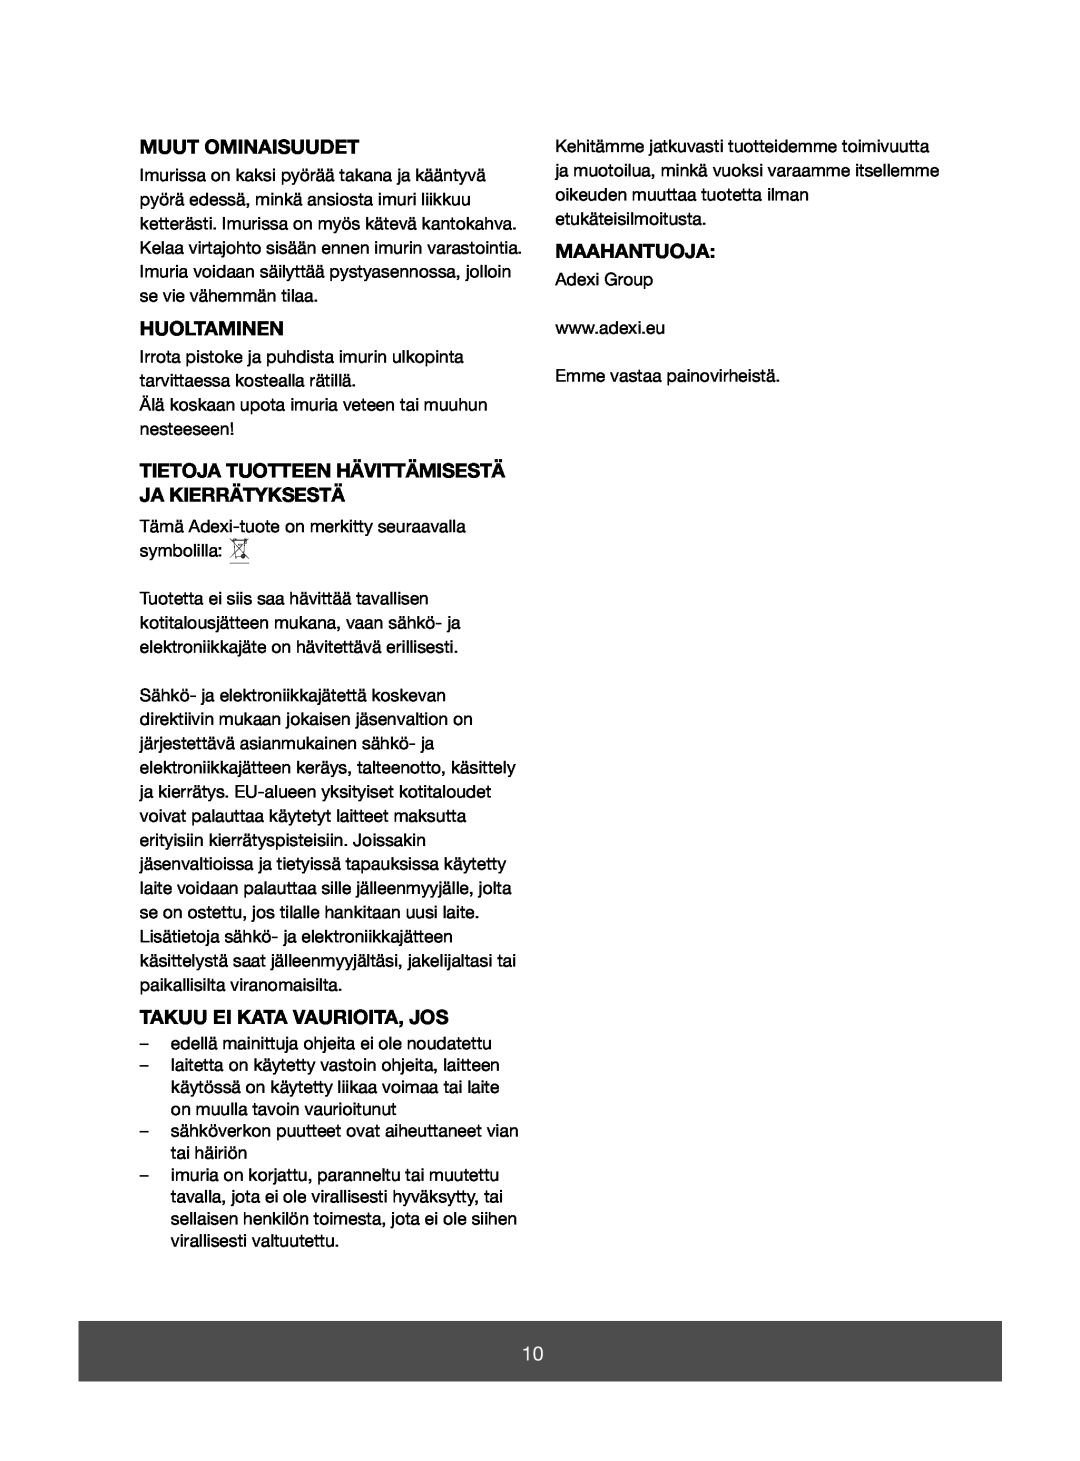 Melissa 640-073 manual Muut Ominaisuudet, Huoltaminen, Tietoja Tuotteen Hävittämisestä Ja Kierrätyksestä, Maahantuoja 